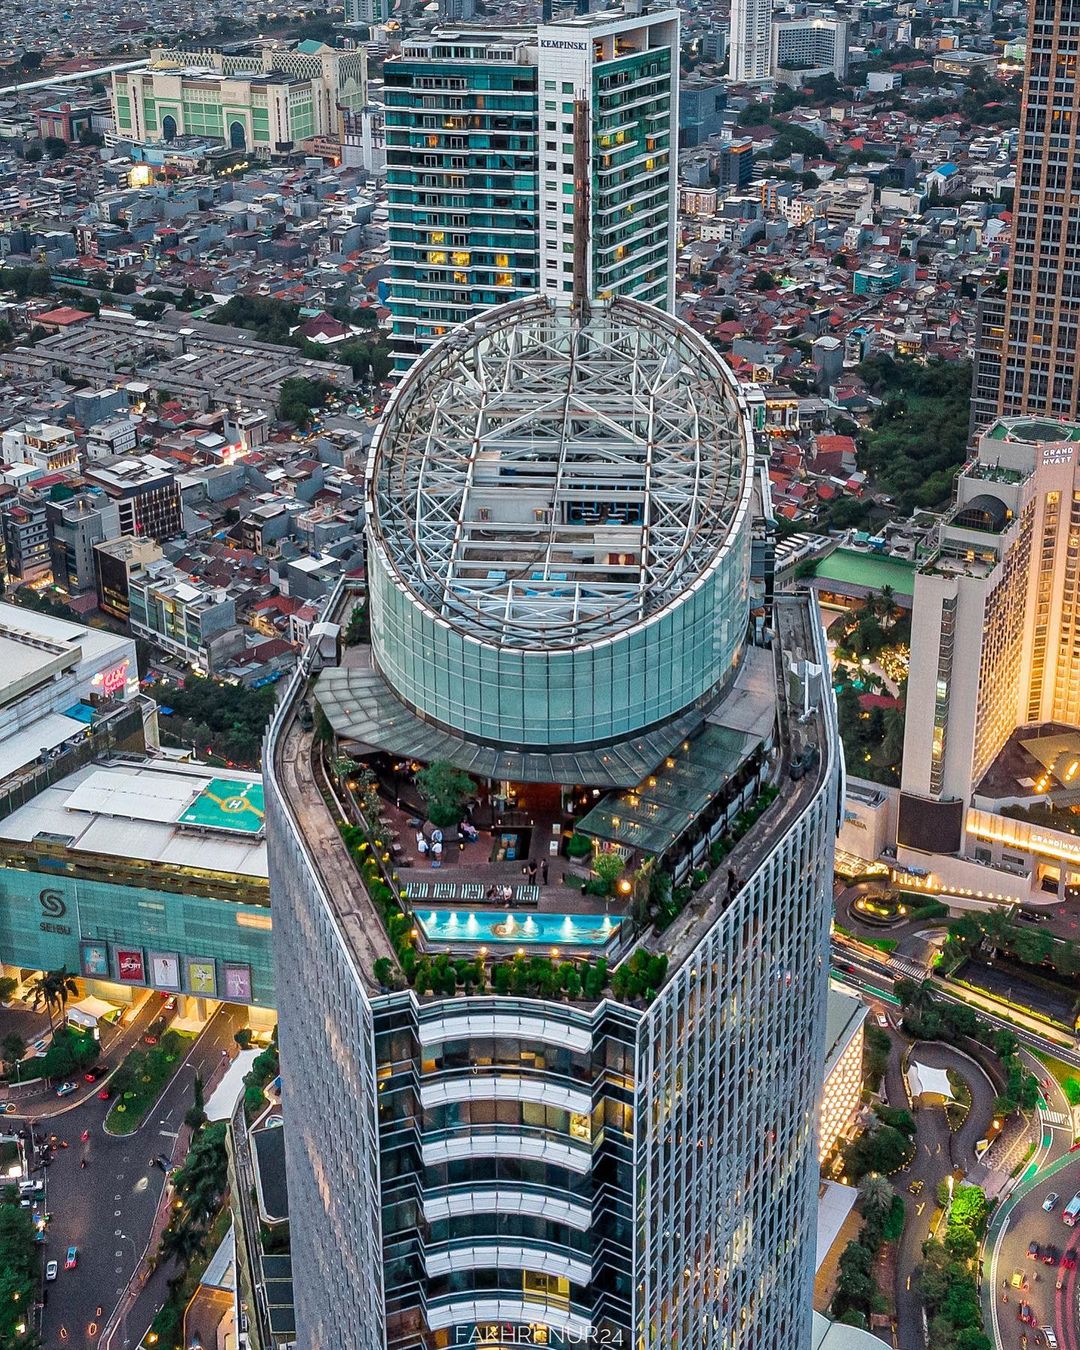 Cafe Rooftop Jakarta SKYE Bar Restaurant Image From @fakhri_nur24